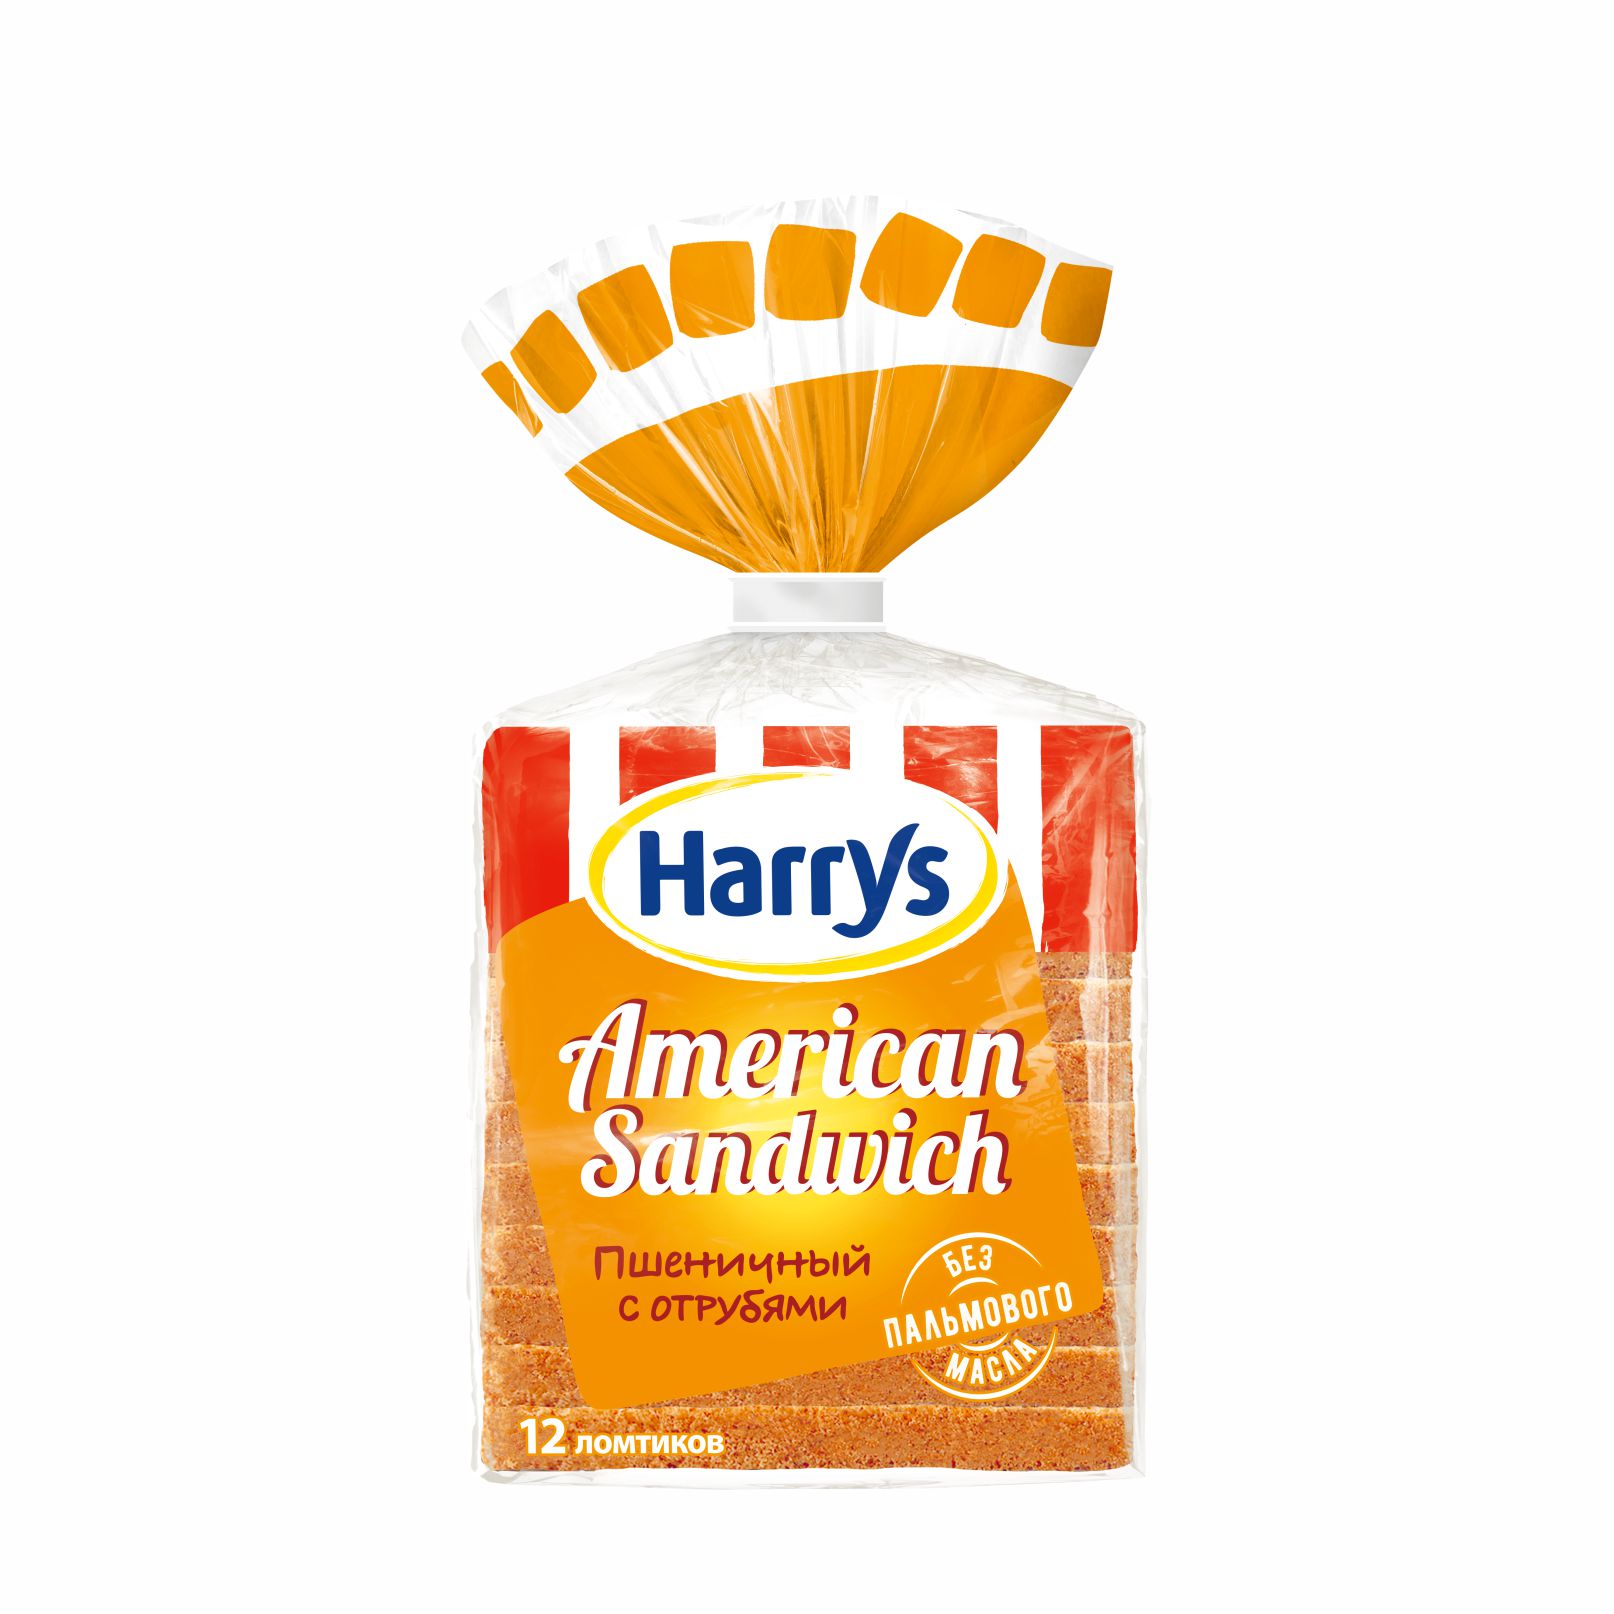 Хлеб с отрубями Harrys American Sandwich 515 г хлеб иван да федор альпийский с отрубями на закваске 400 г